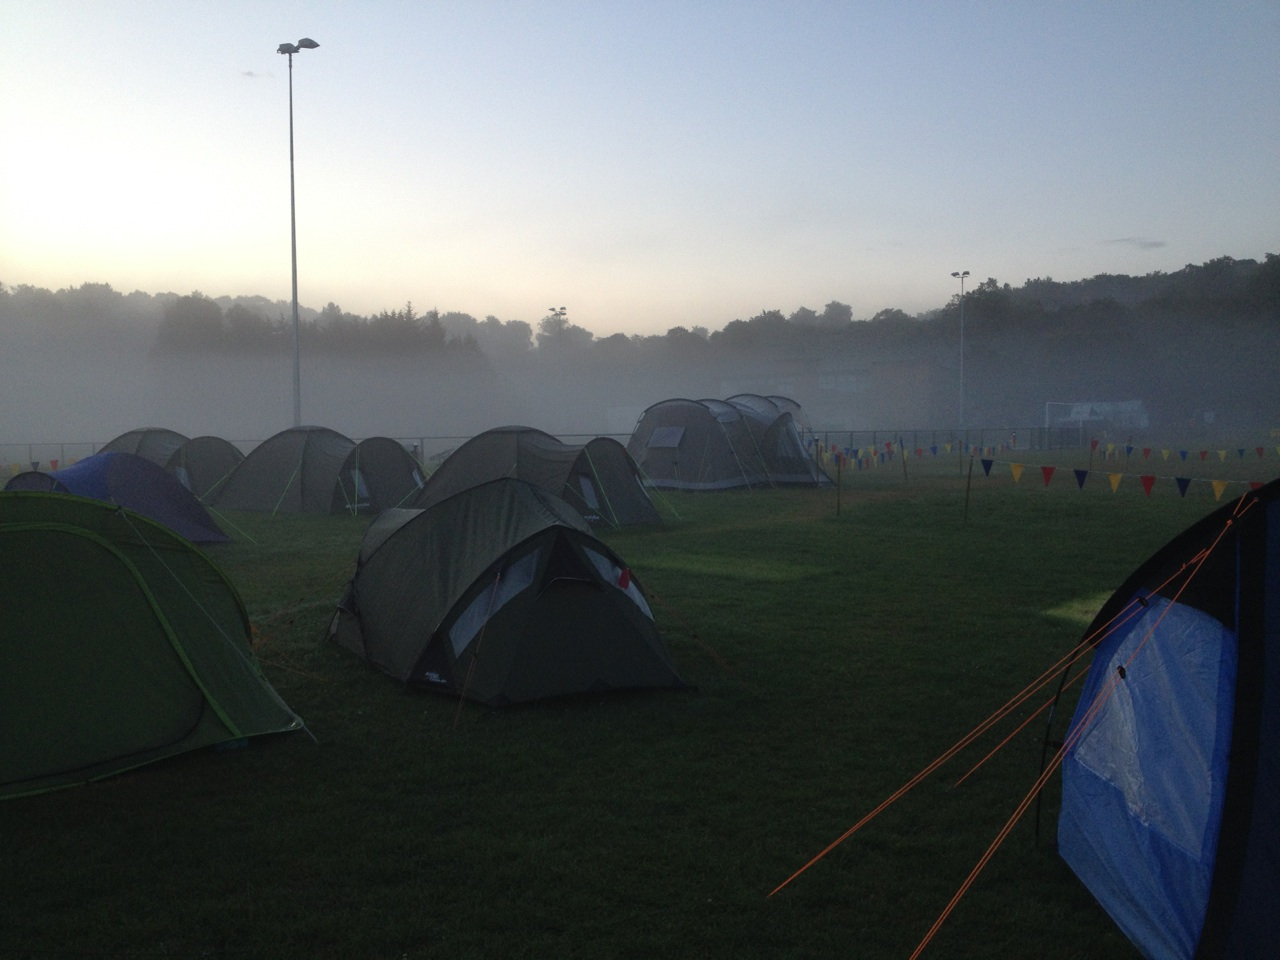 Early morning peace at Camping Ninja 